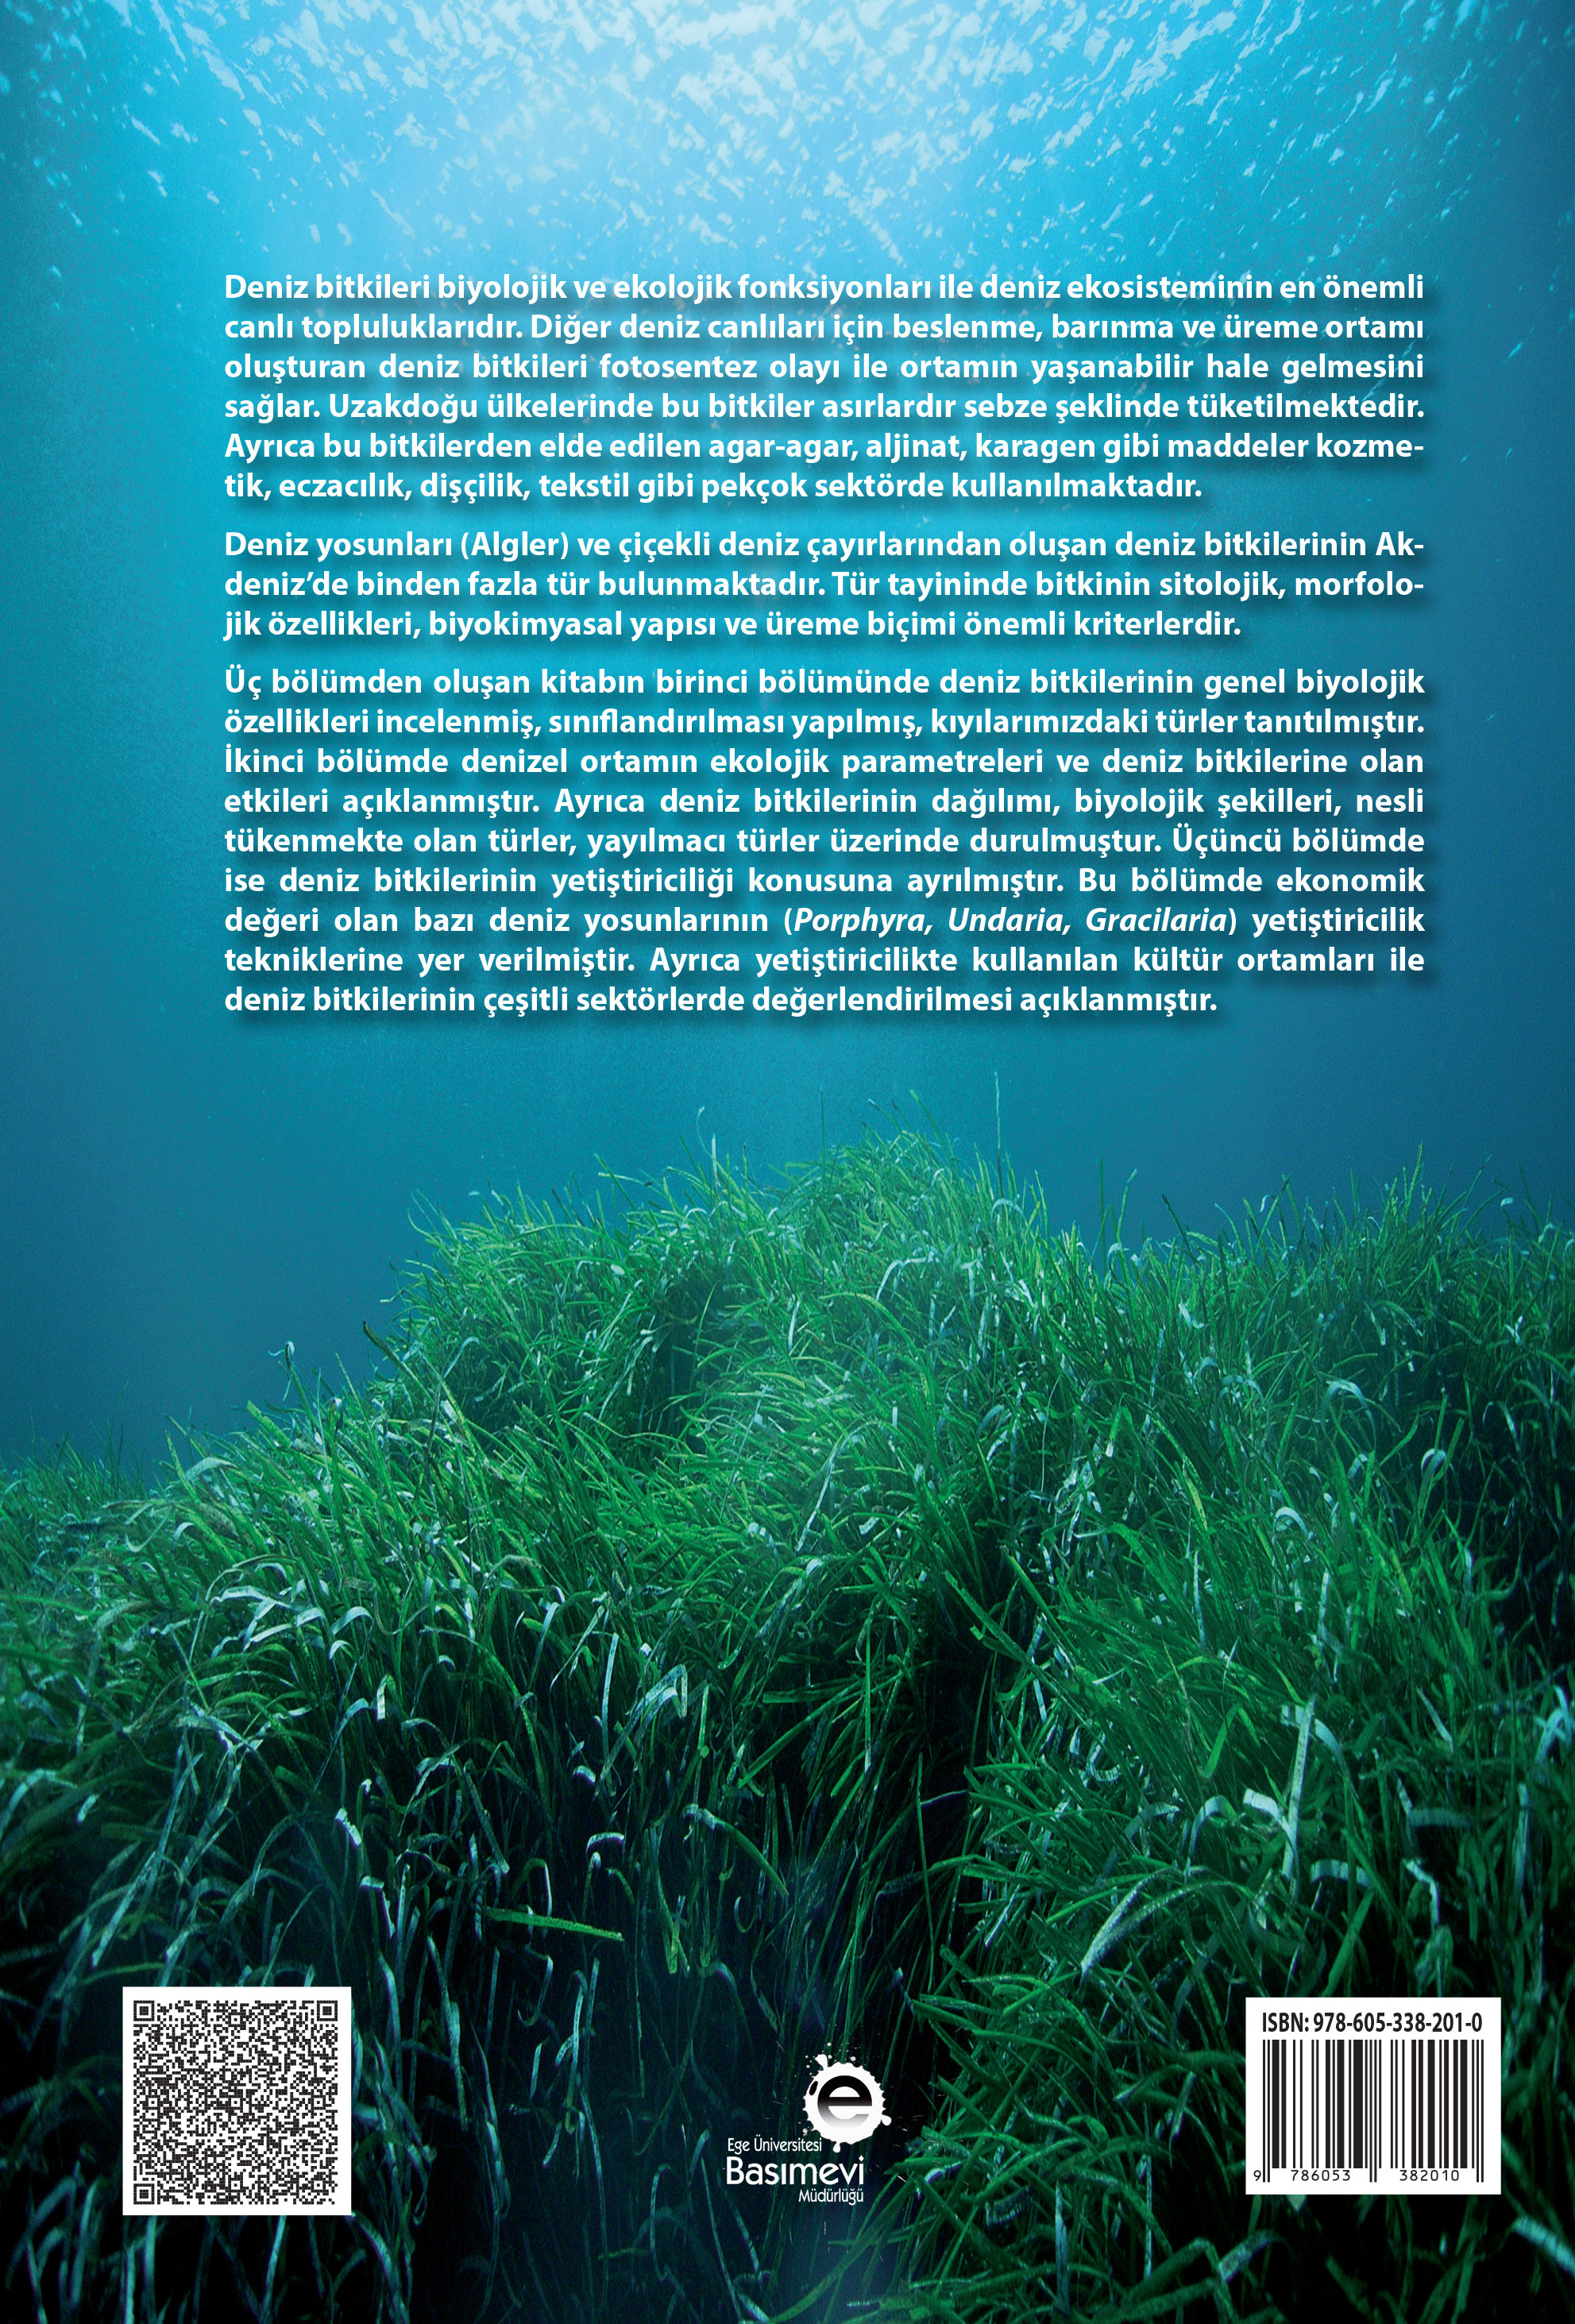 Su Bitkileri I (Deniz Bitkilerinin Biyolojisi, Ekolojisi, Yetiştirme Teknikleri) (Genişletilmiş)